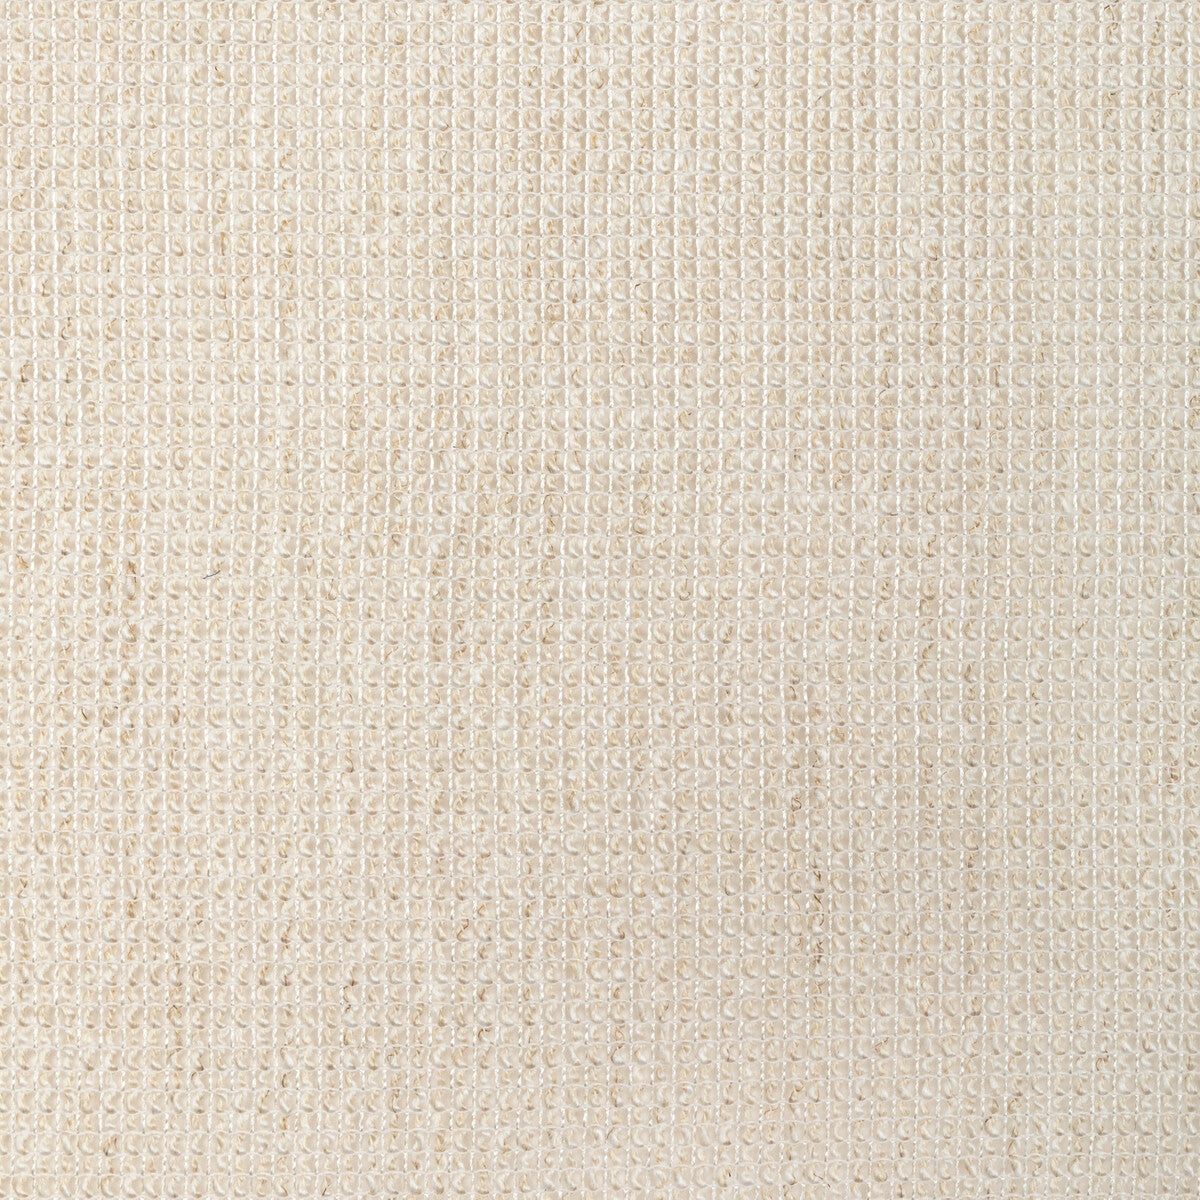 Kravet Drapery fabric in 4916-161 color - pattern 4916.161.0 - by Kravet Design